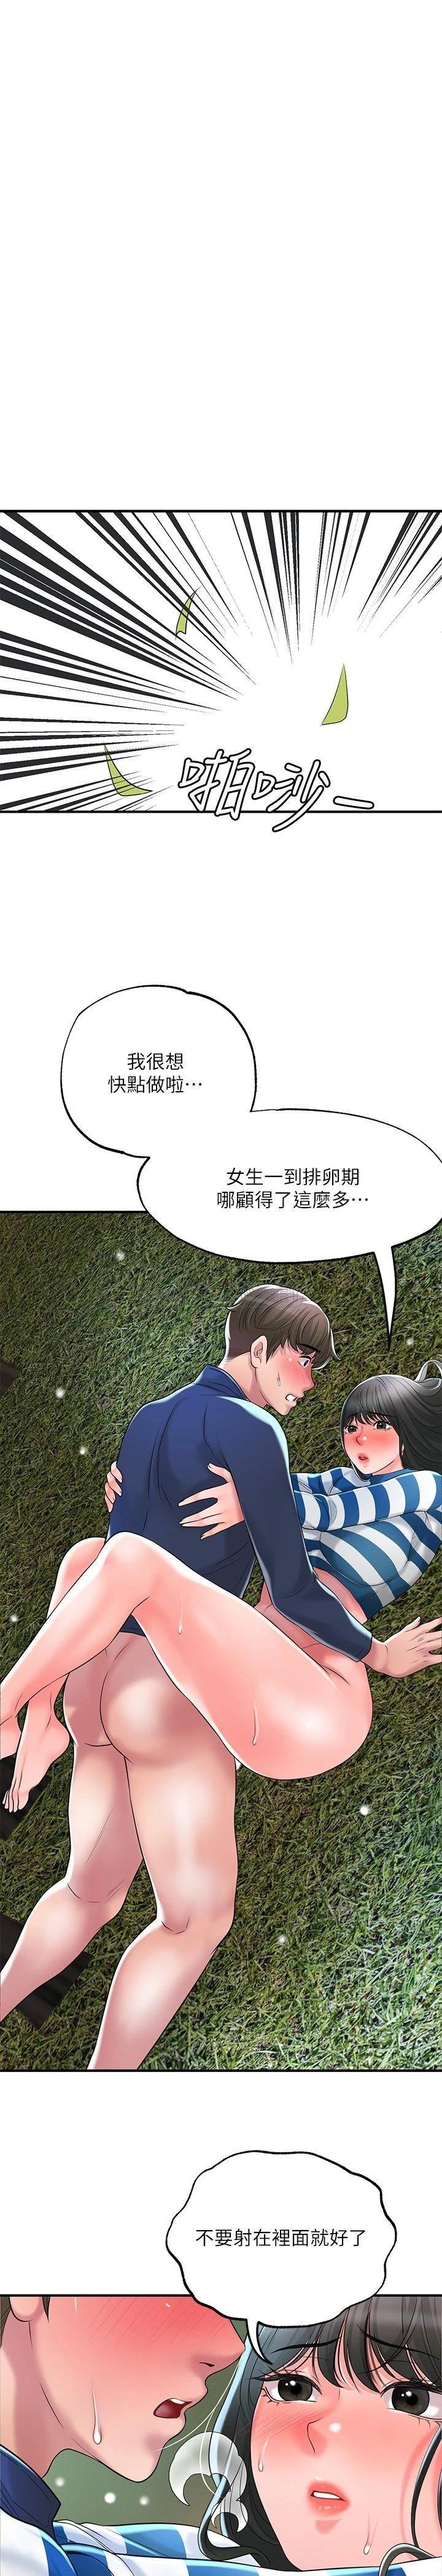 韩国污漫画 幸福督市 第57话 与学生在野外激战 35